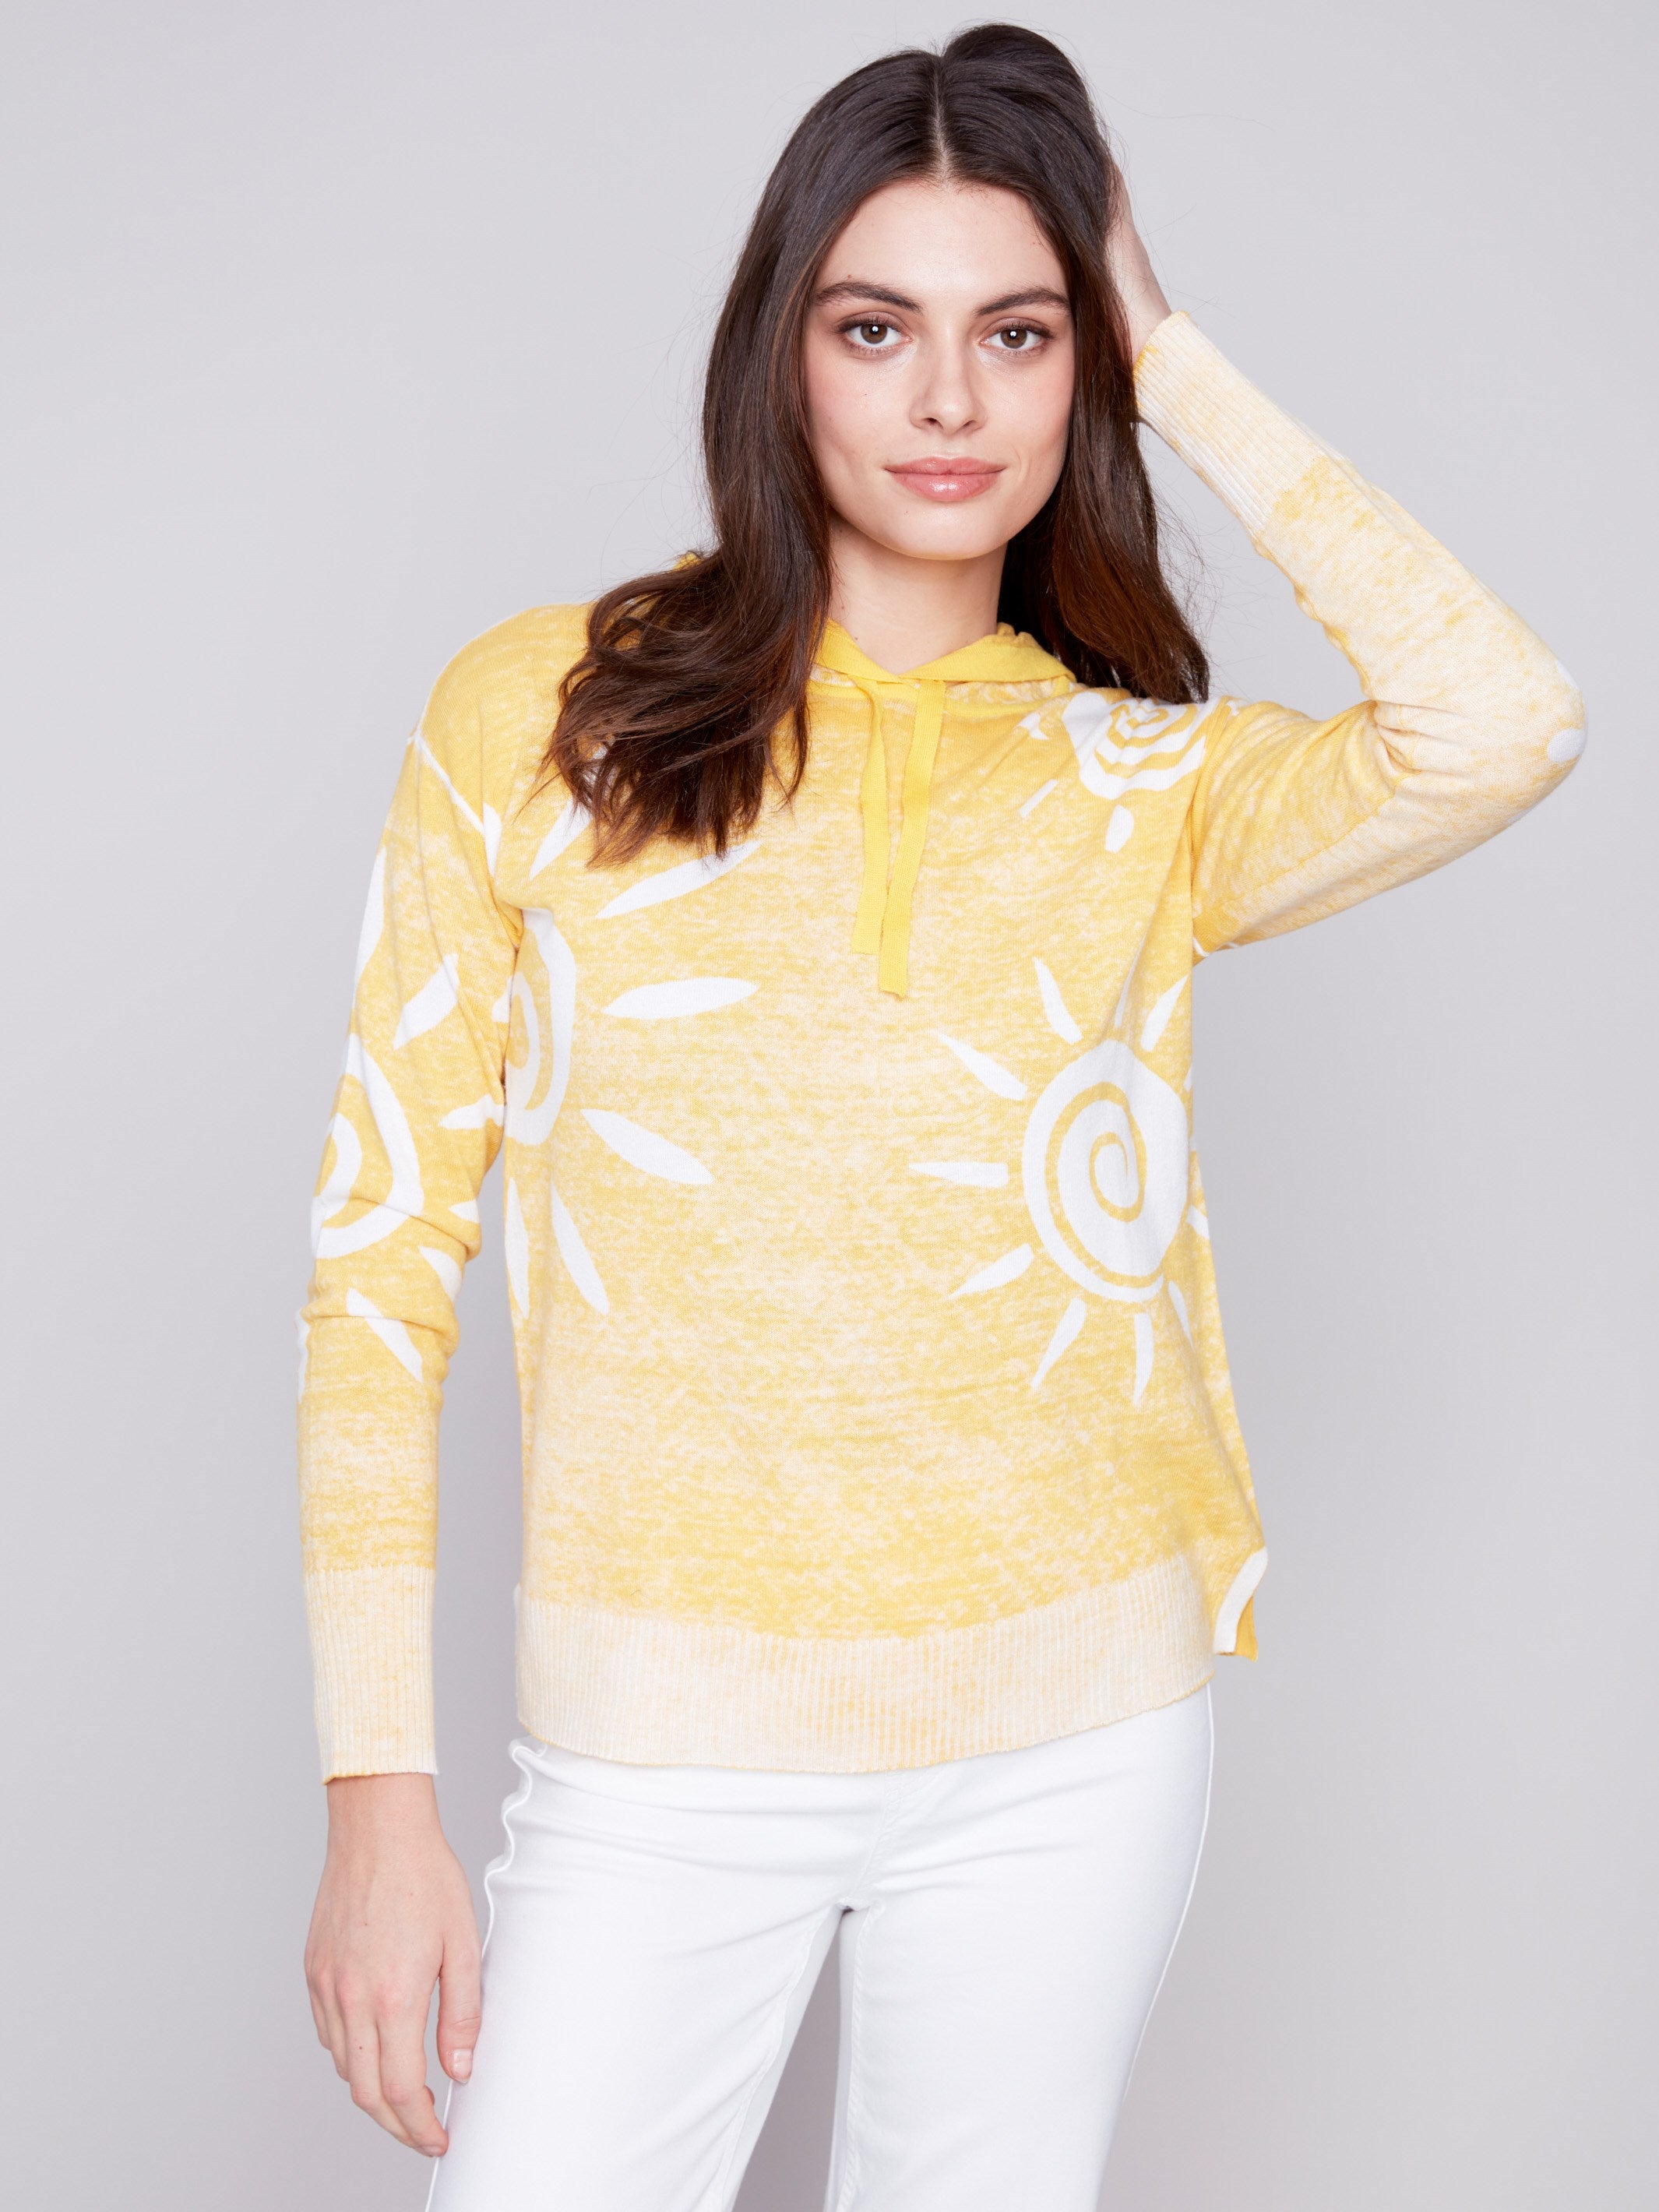 Charlie B Reverse Printed Hoodie Sweater - Corn - Image 2